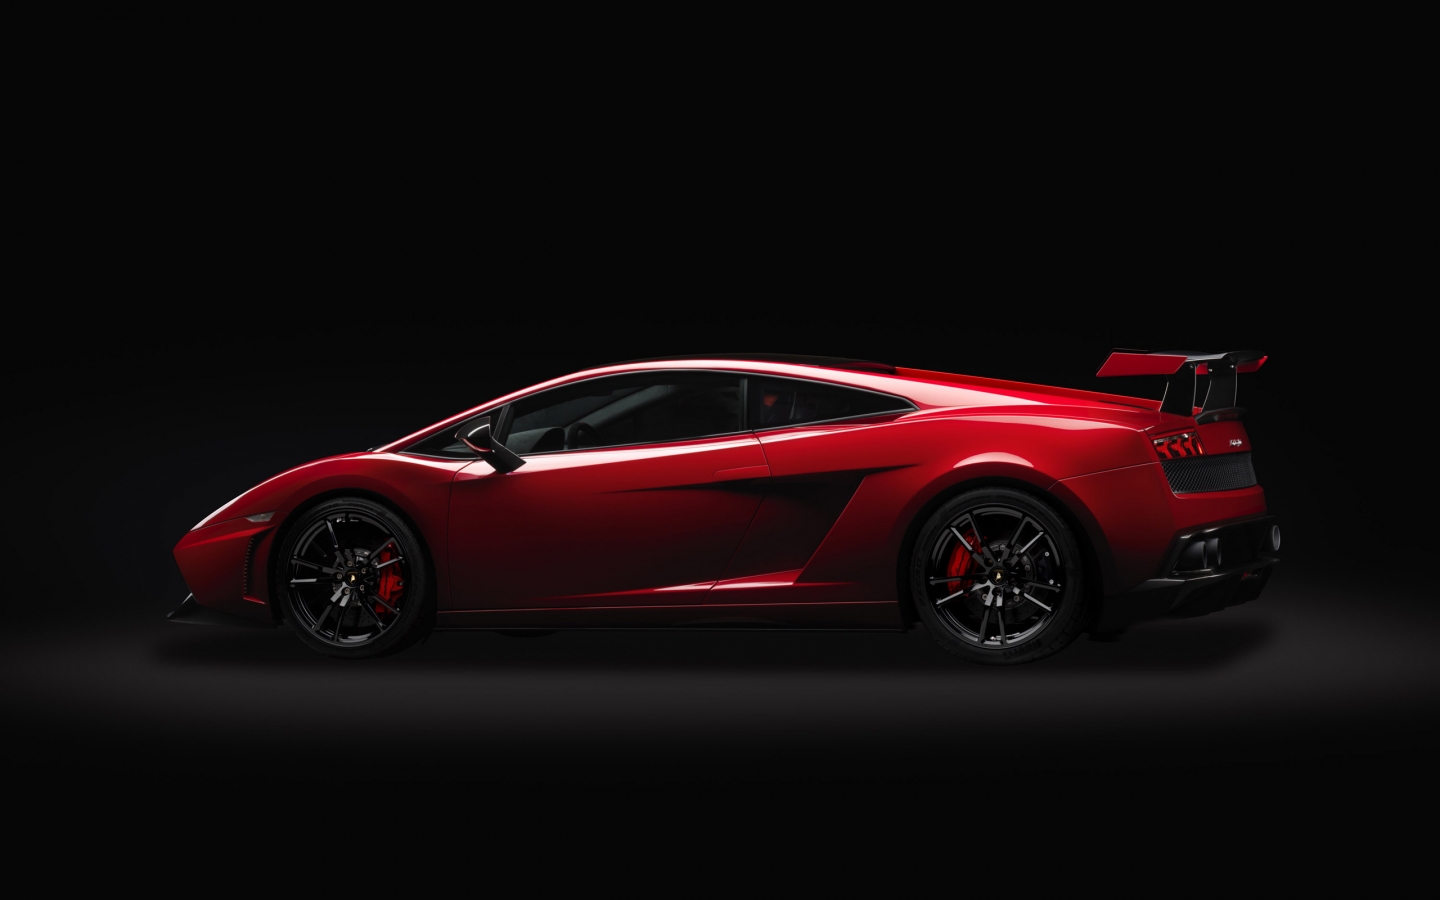 Red Lamborghini Gallardo LP 570 for 1440 x 900 widescreen resolution